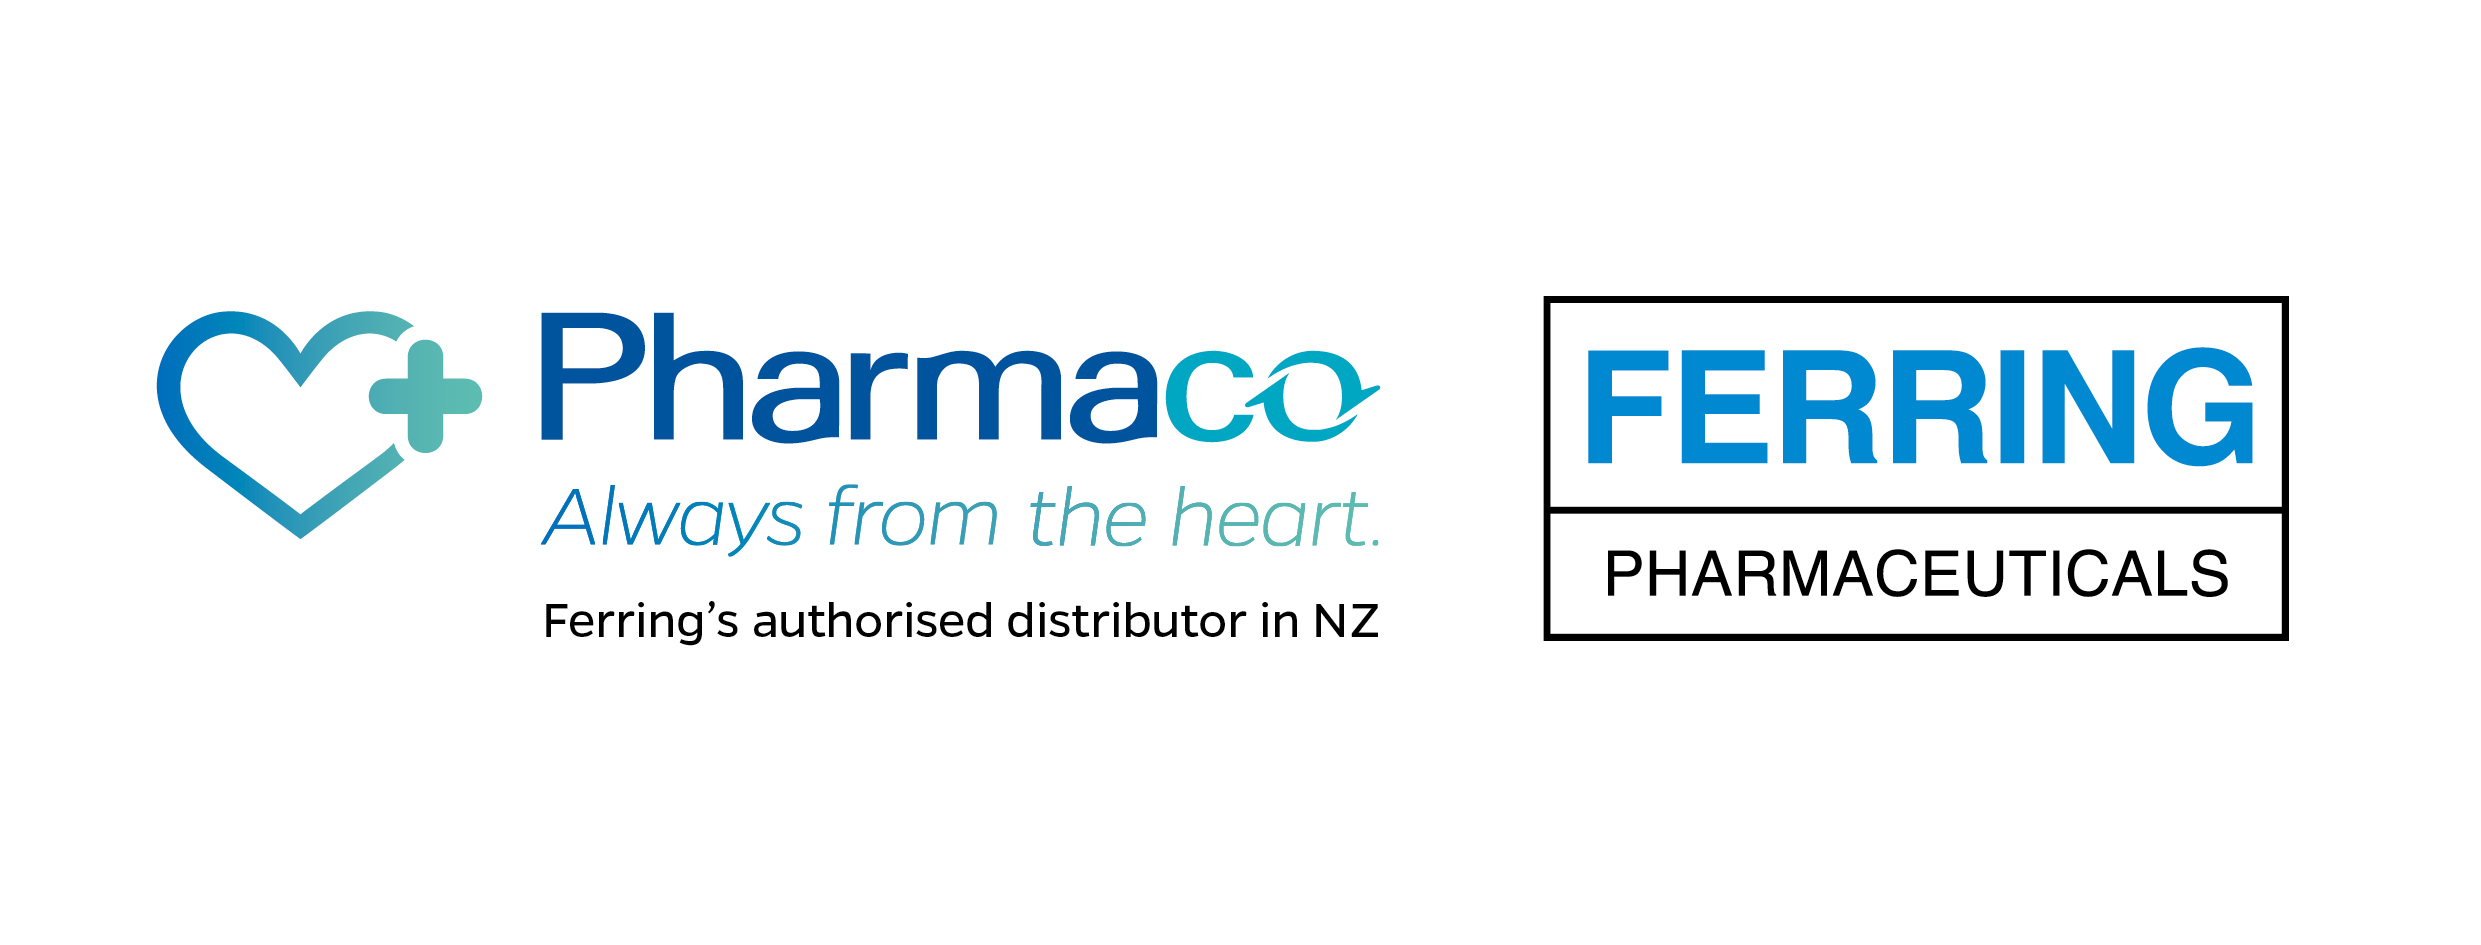 Ferring_Pharmaco_Logo.jpg